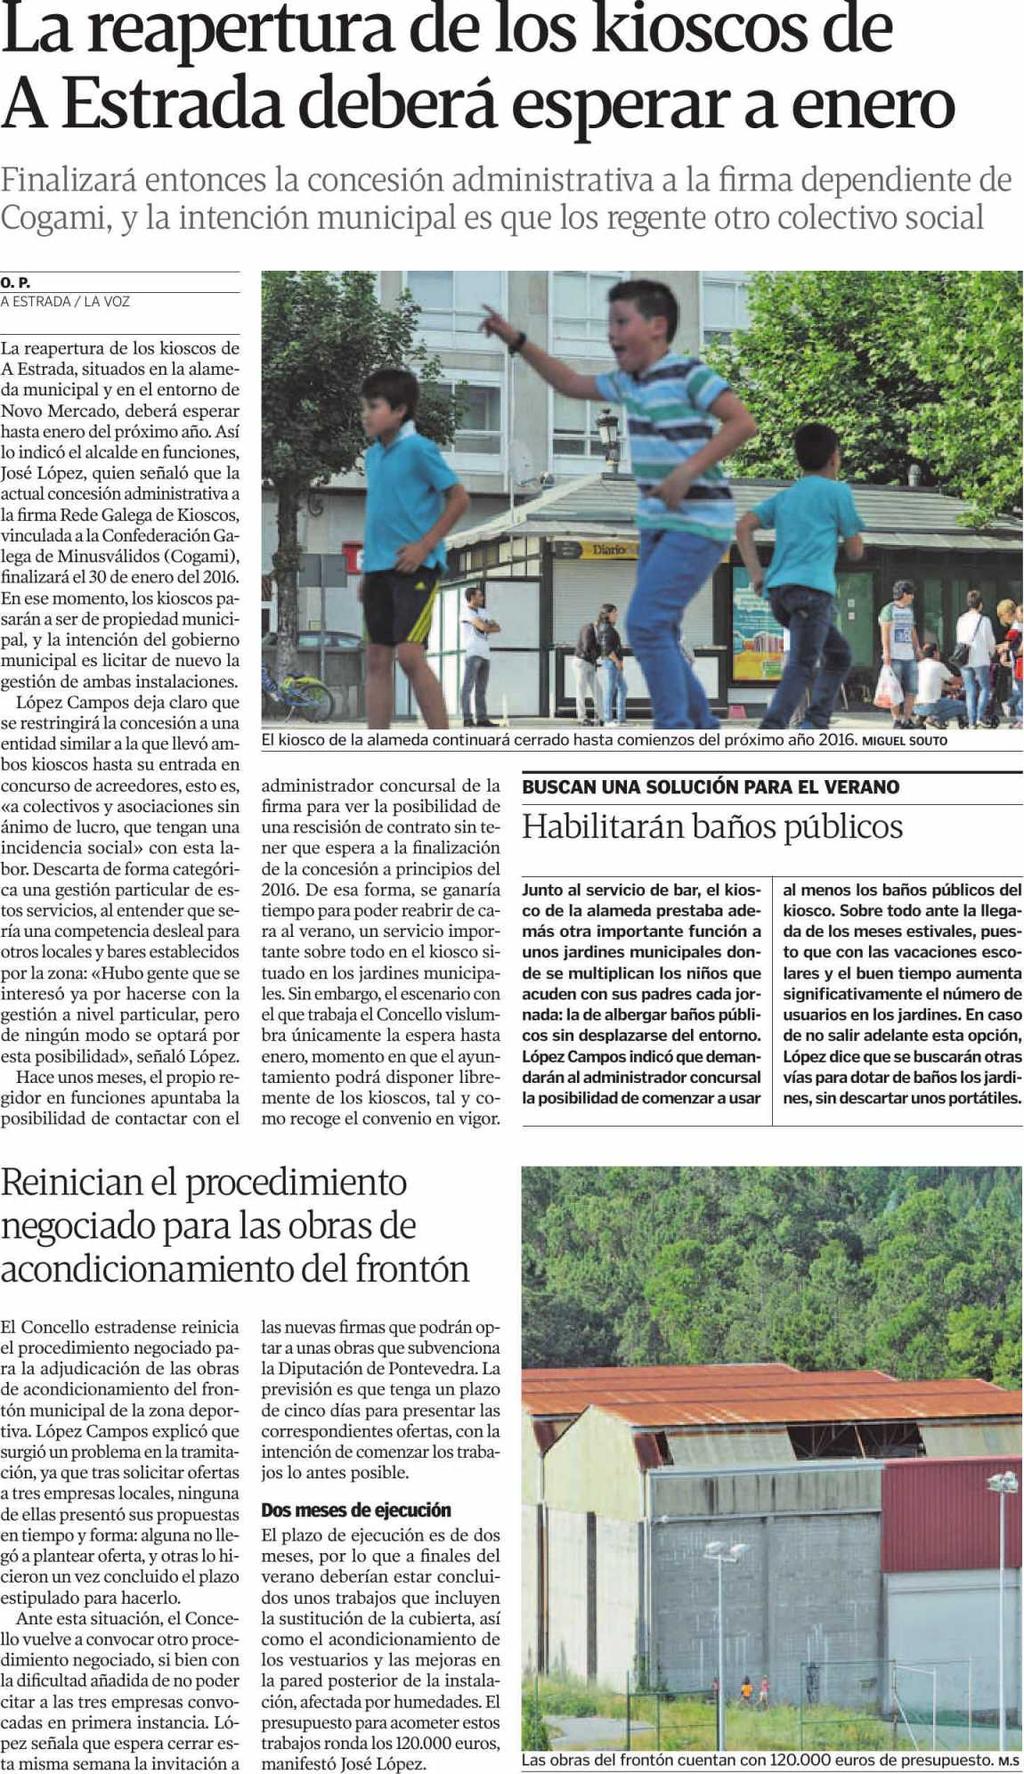 La Voz de Galícia (Deza y Tabeiros) Pontevedra 11/06/15 Prensa: Diaria